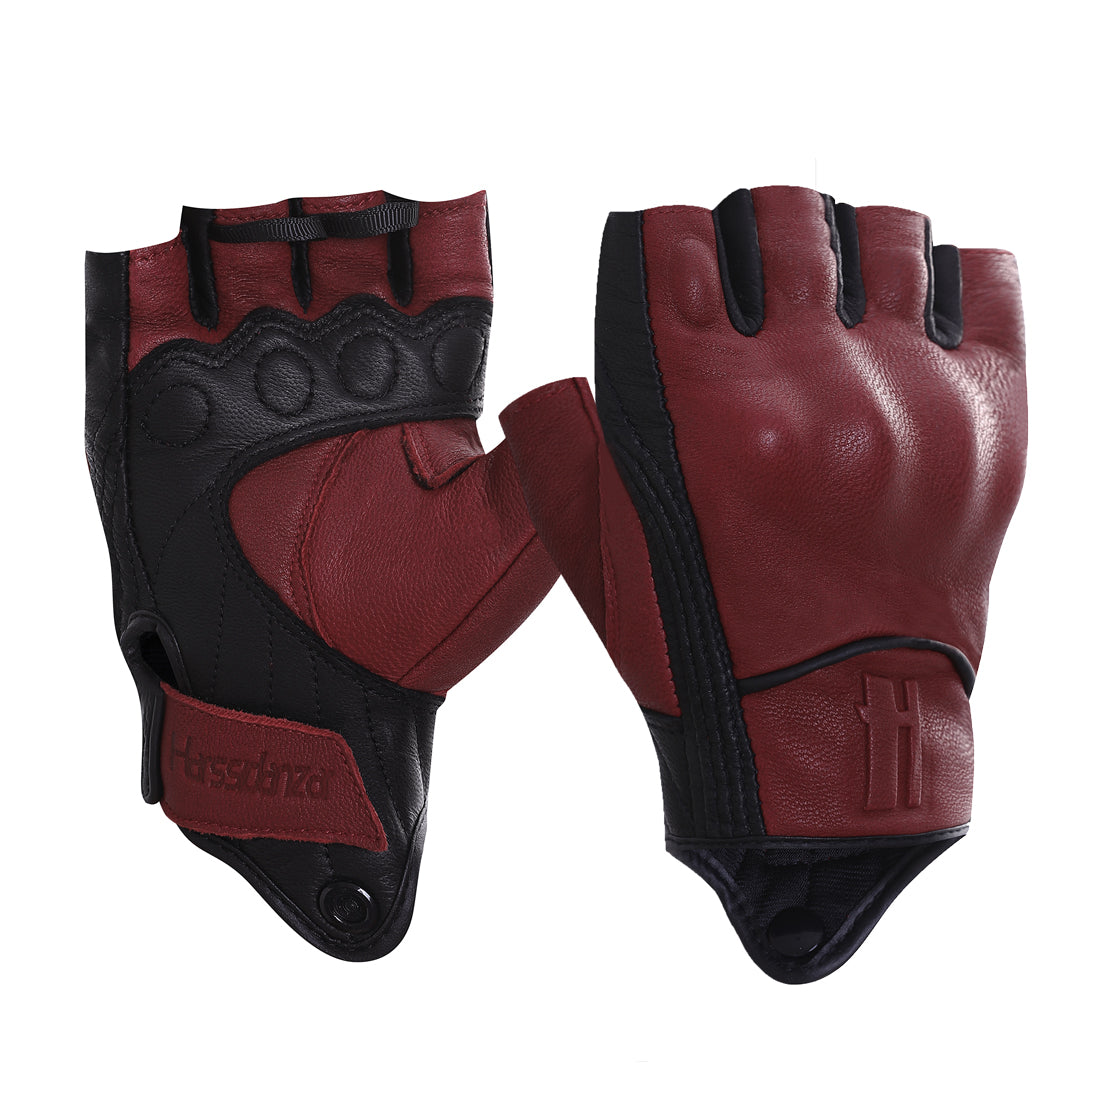 fingerless motorcycle gloves